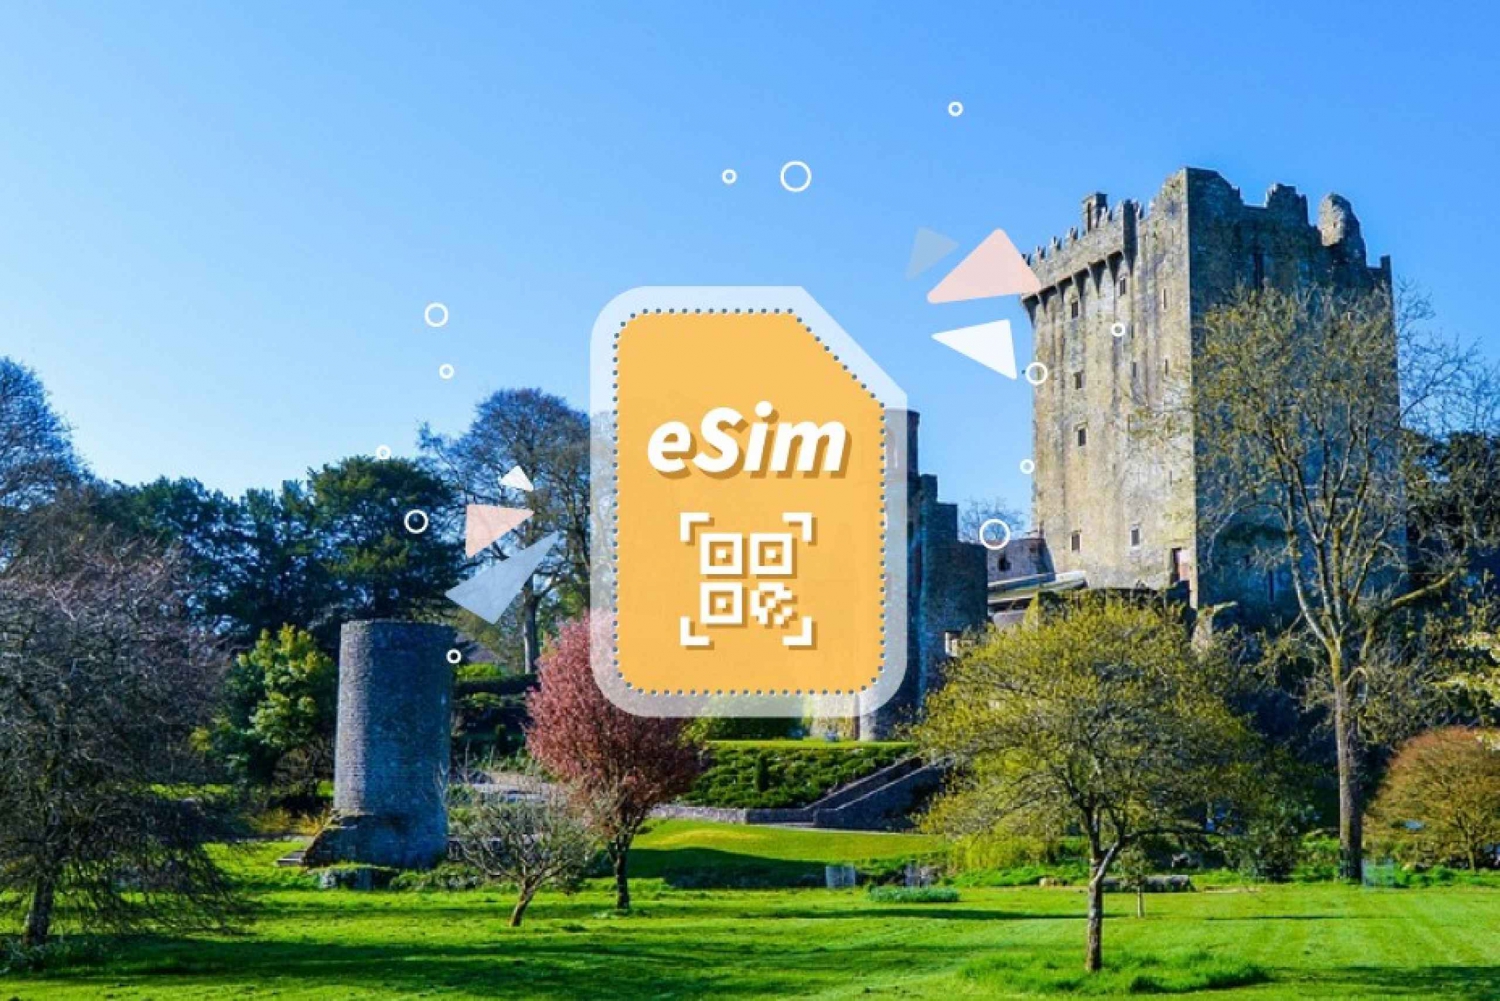 Ireland/Europe: 5G eSim Mobile Data Plan